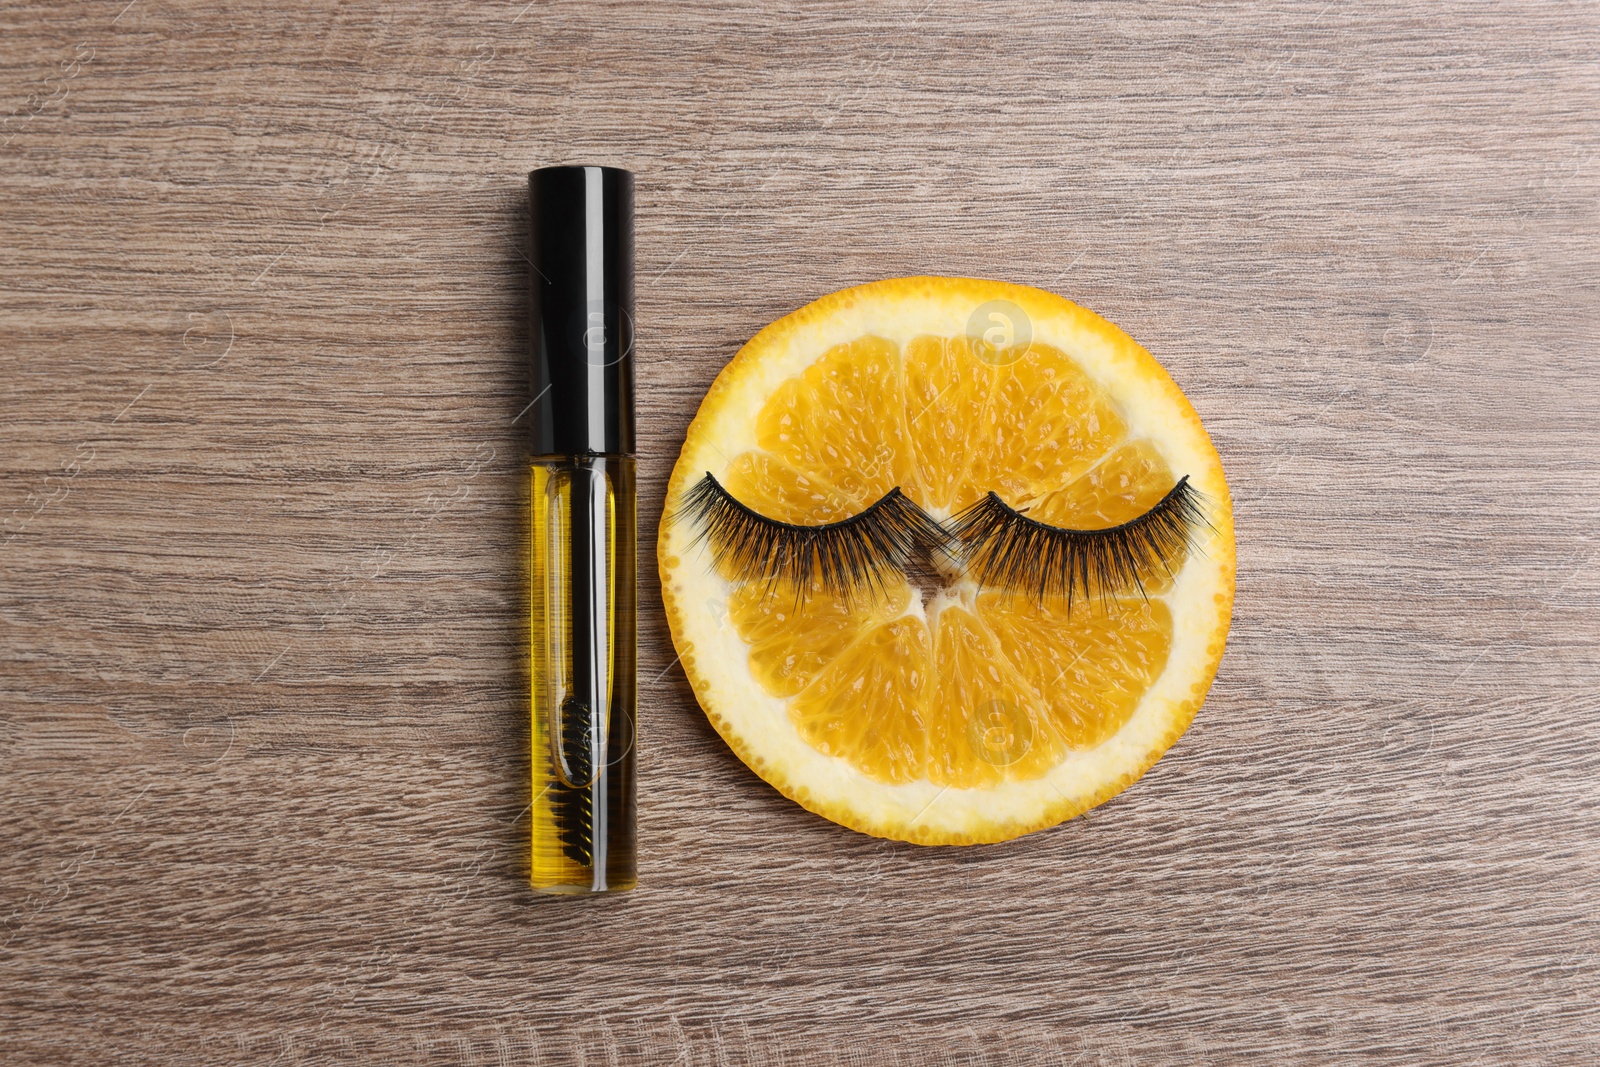 Photo of False eyelashes, orange slice and tube of oil on wooden table, flat lay